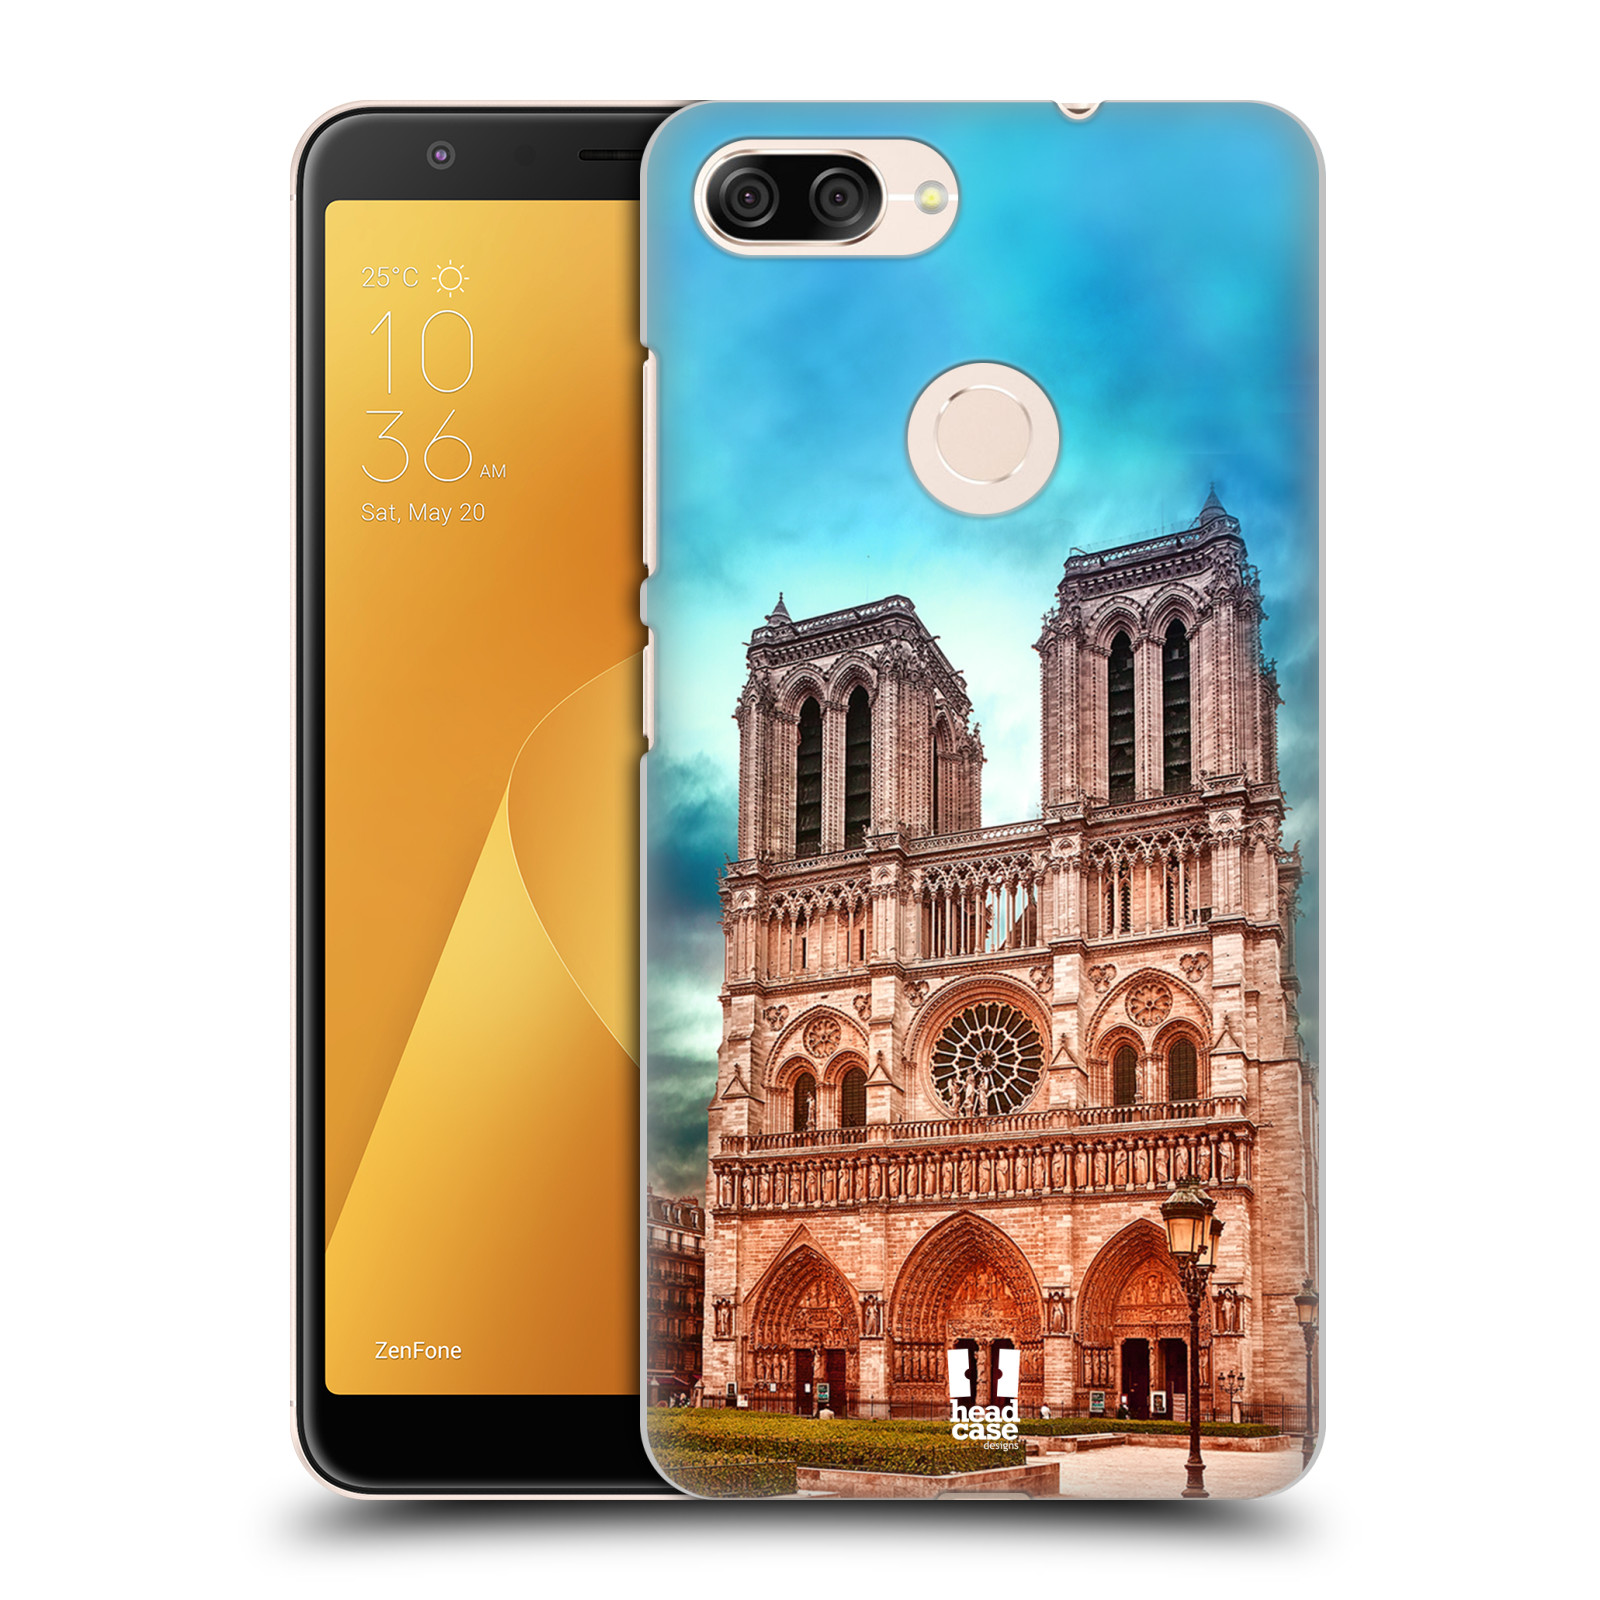 Pouzdro na mobil ASUS ZENFONE Max Plus M1 - HEAD CASE - historická místa katedrála Notre Dame